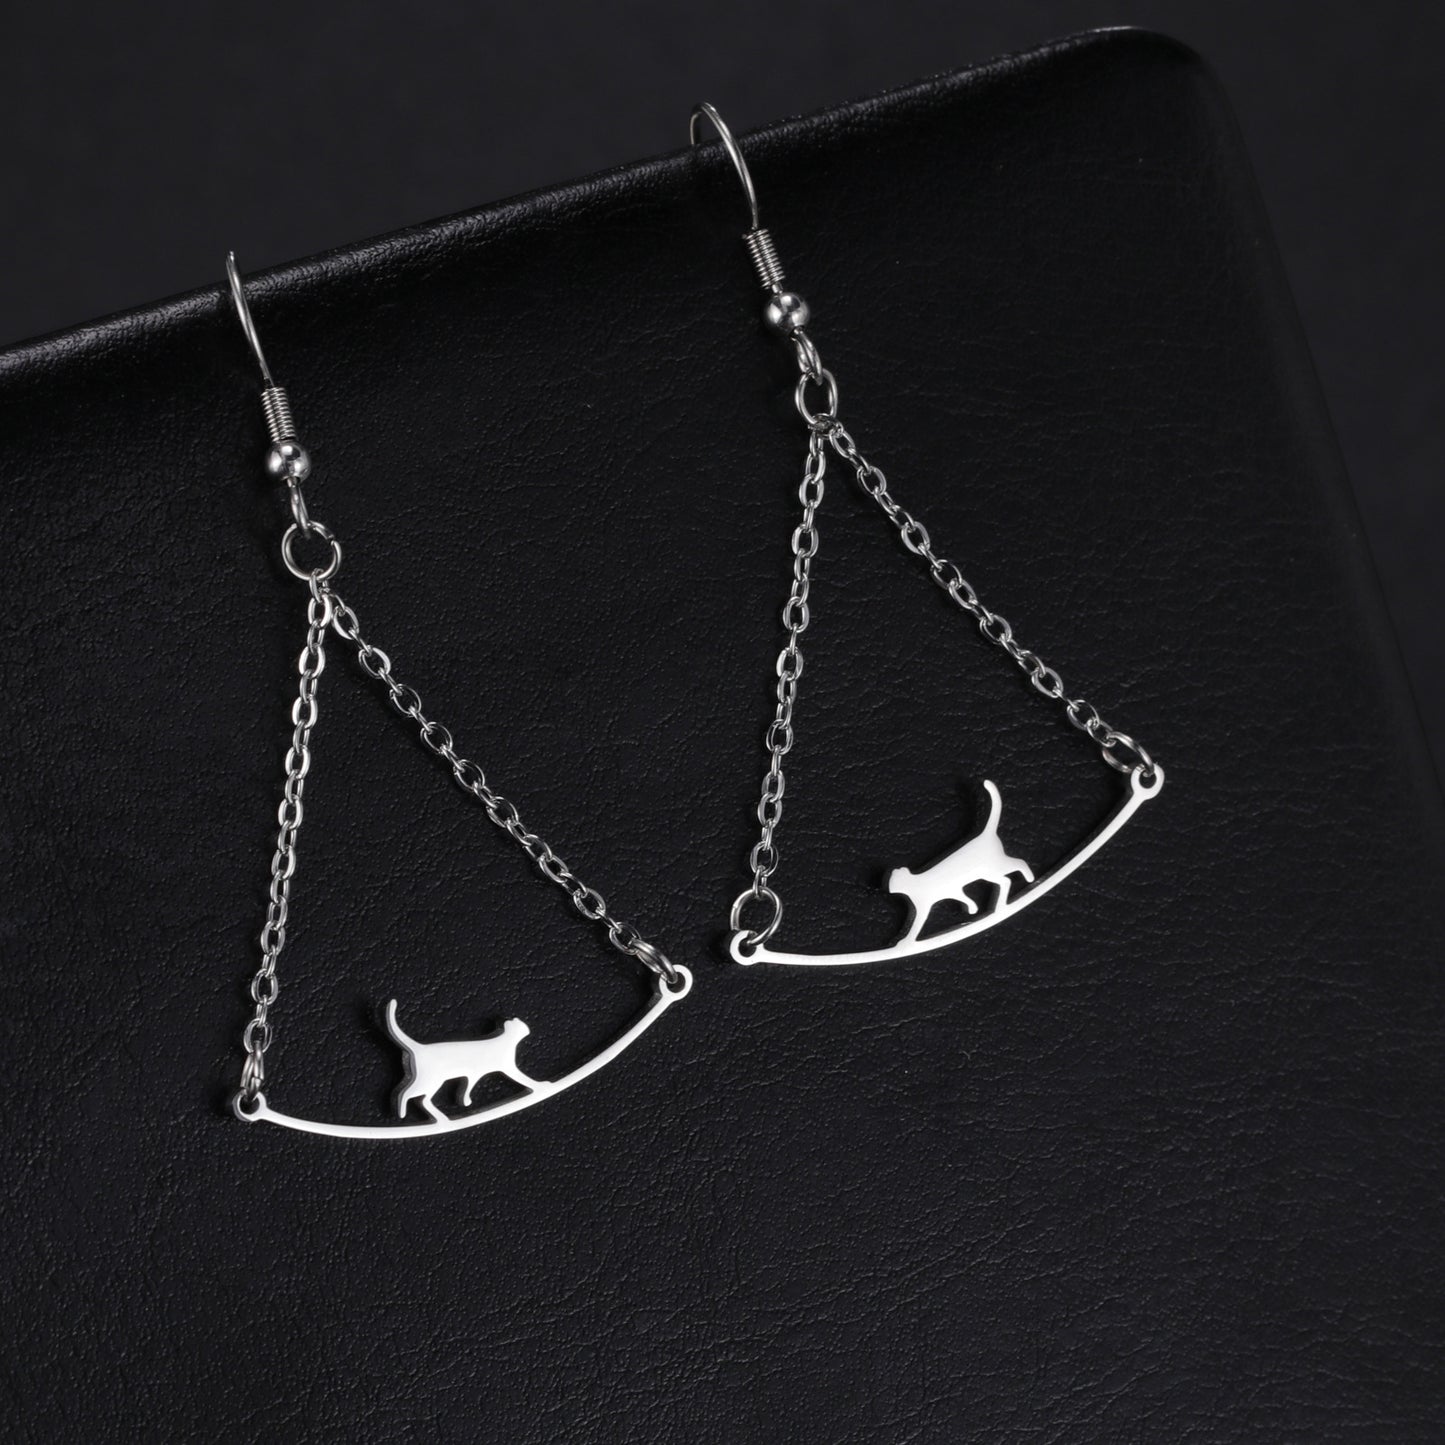 Simple Rope Walking Cat Earrings